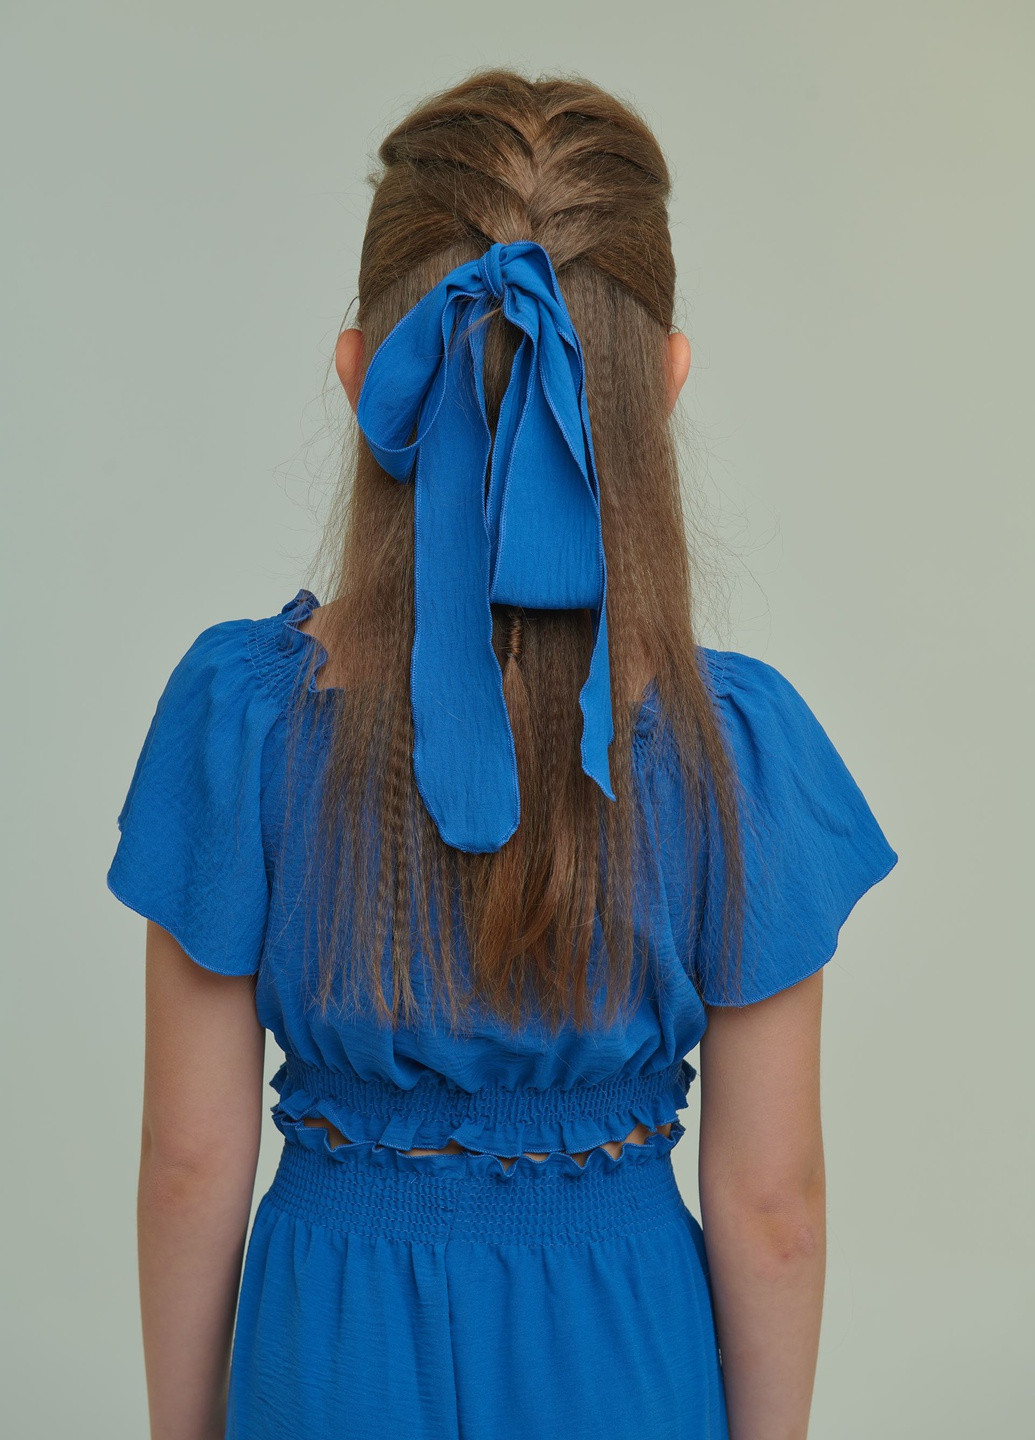 Синий летний брючный костюм (топ+брюки) для девочки синий брючный Yumster